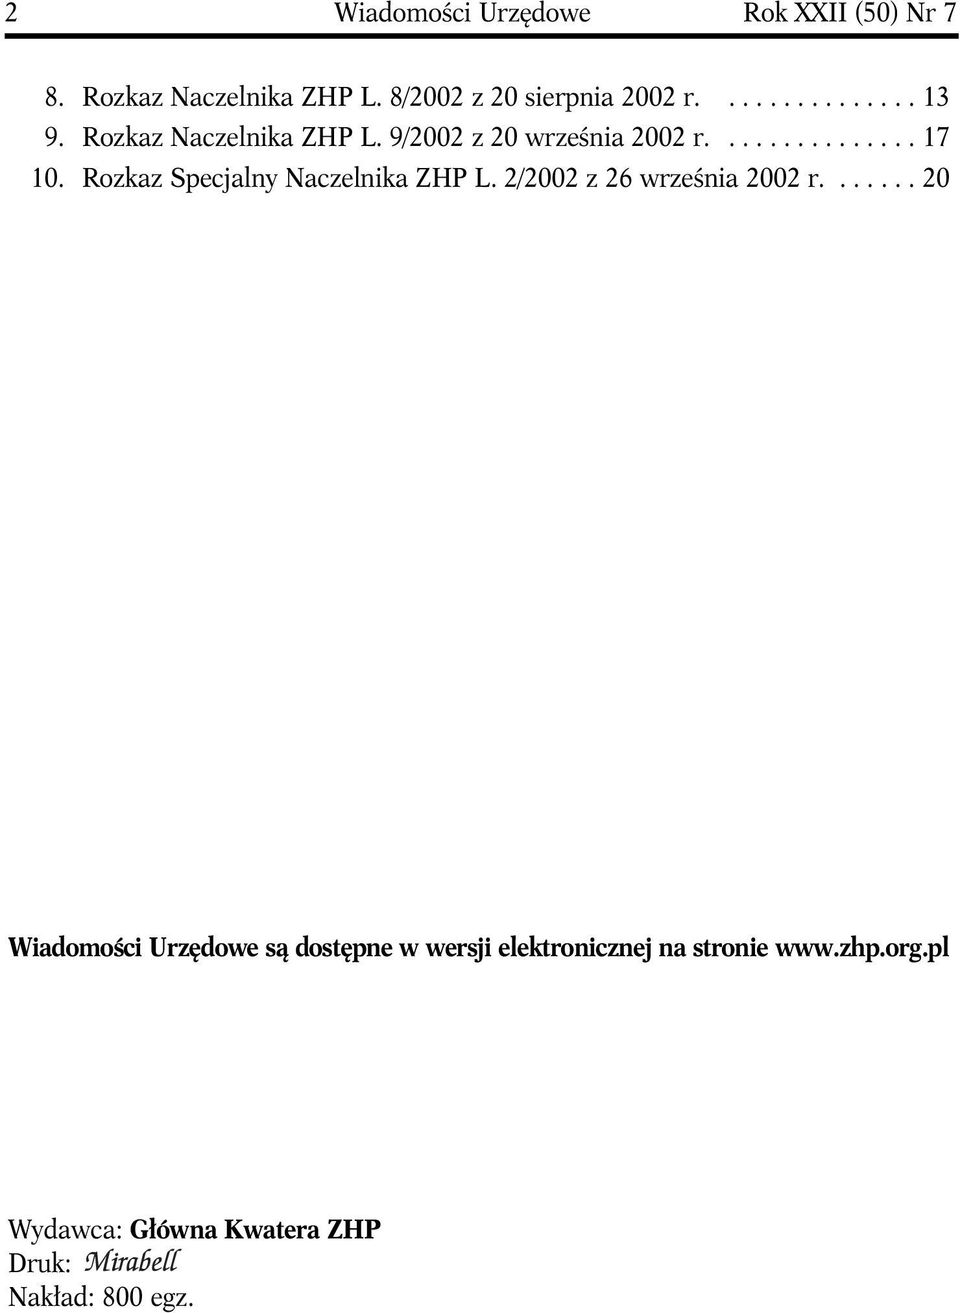 Rozkaz Specjalny Naczelnika ZHP L. 2/2002 z 26 września 2002 r.